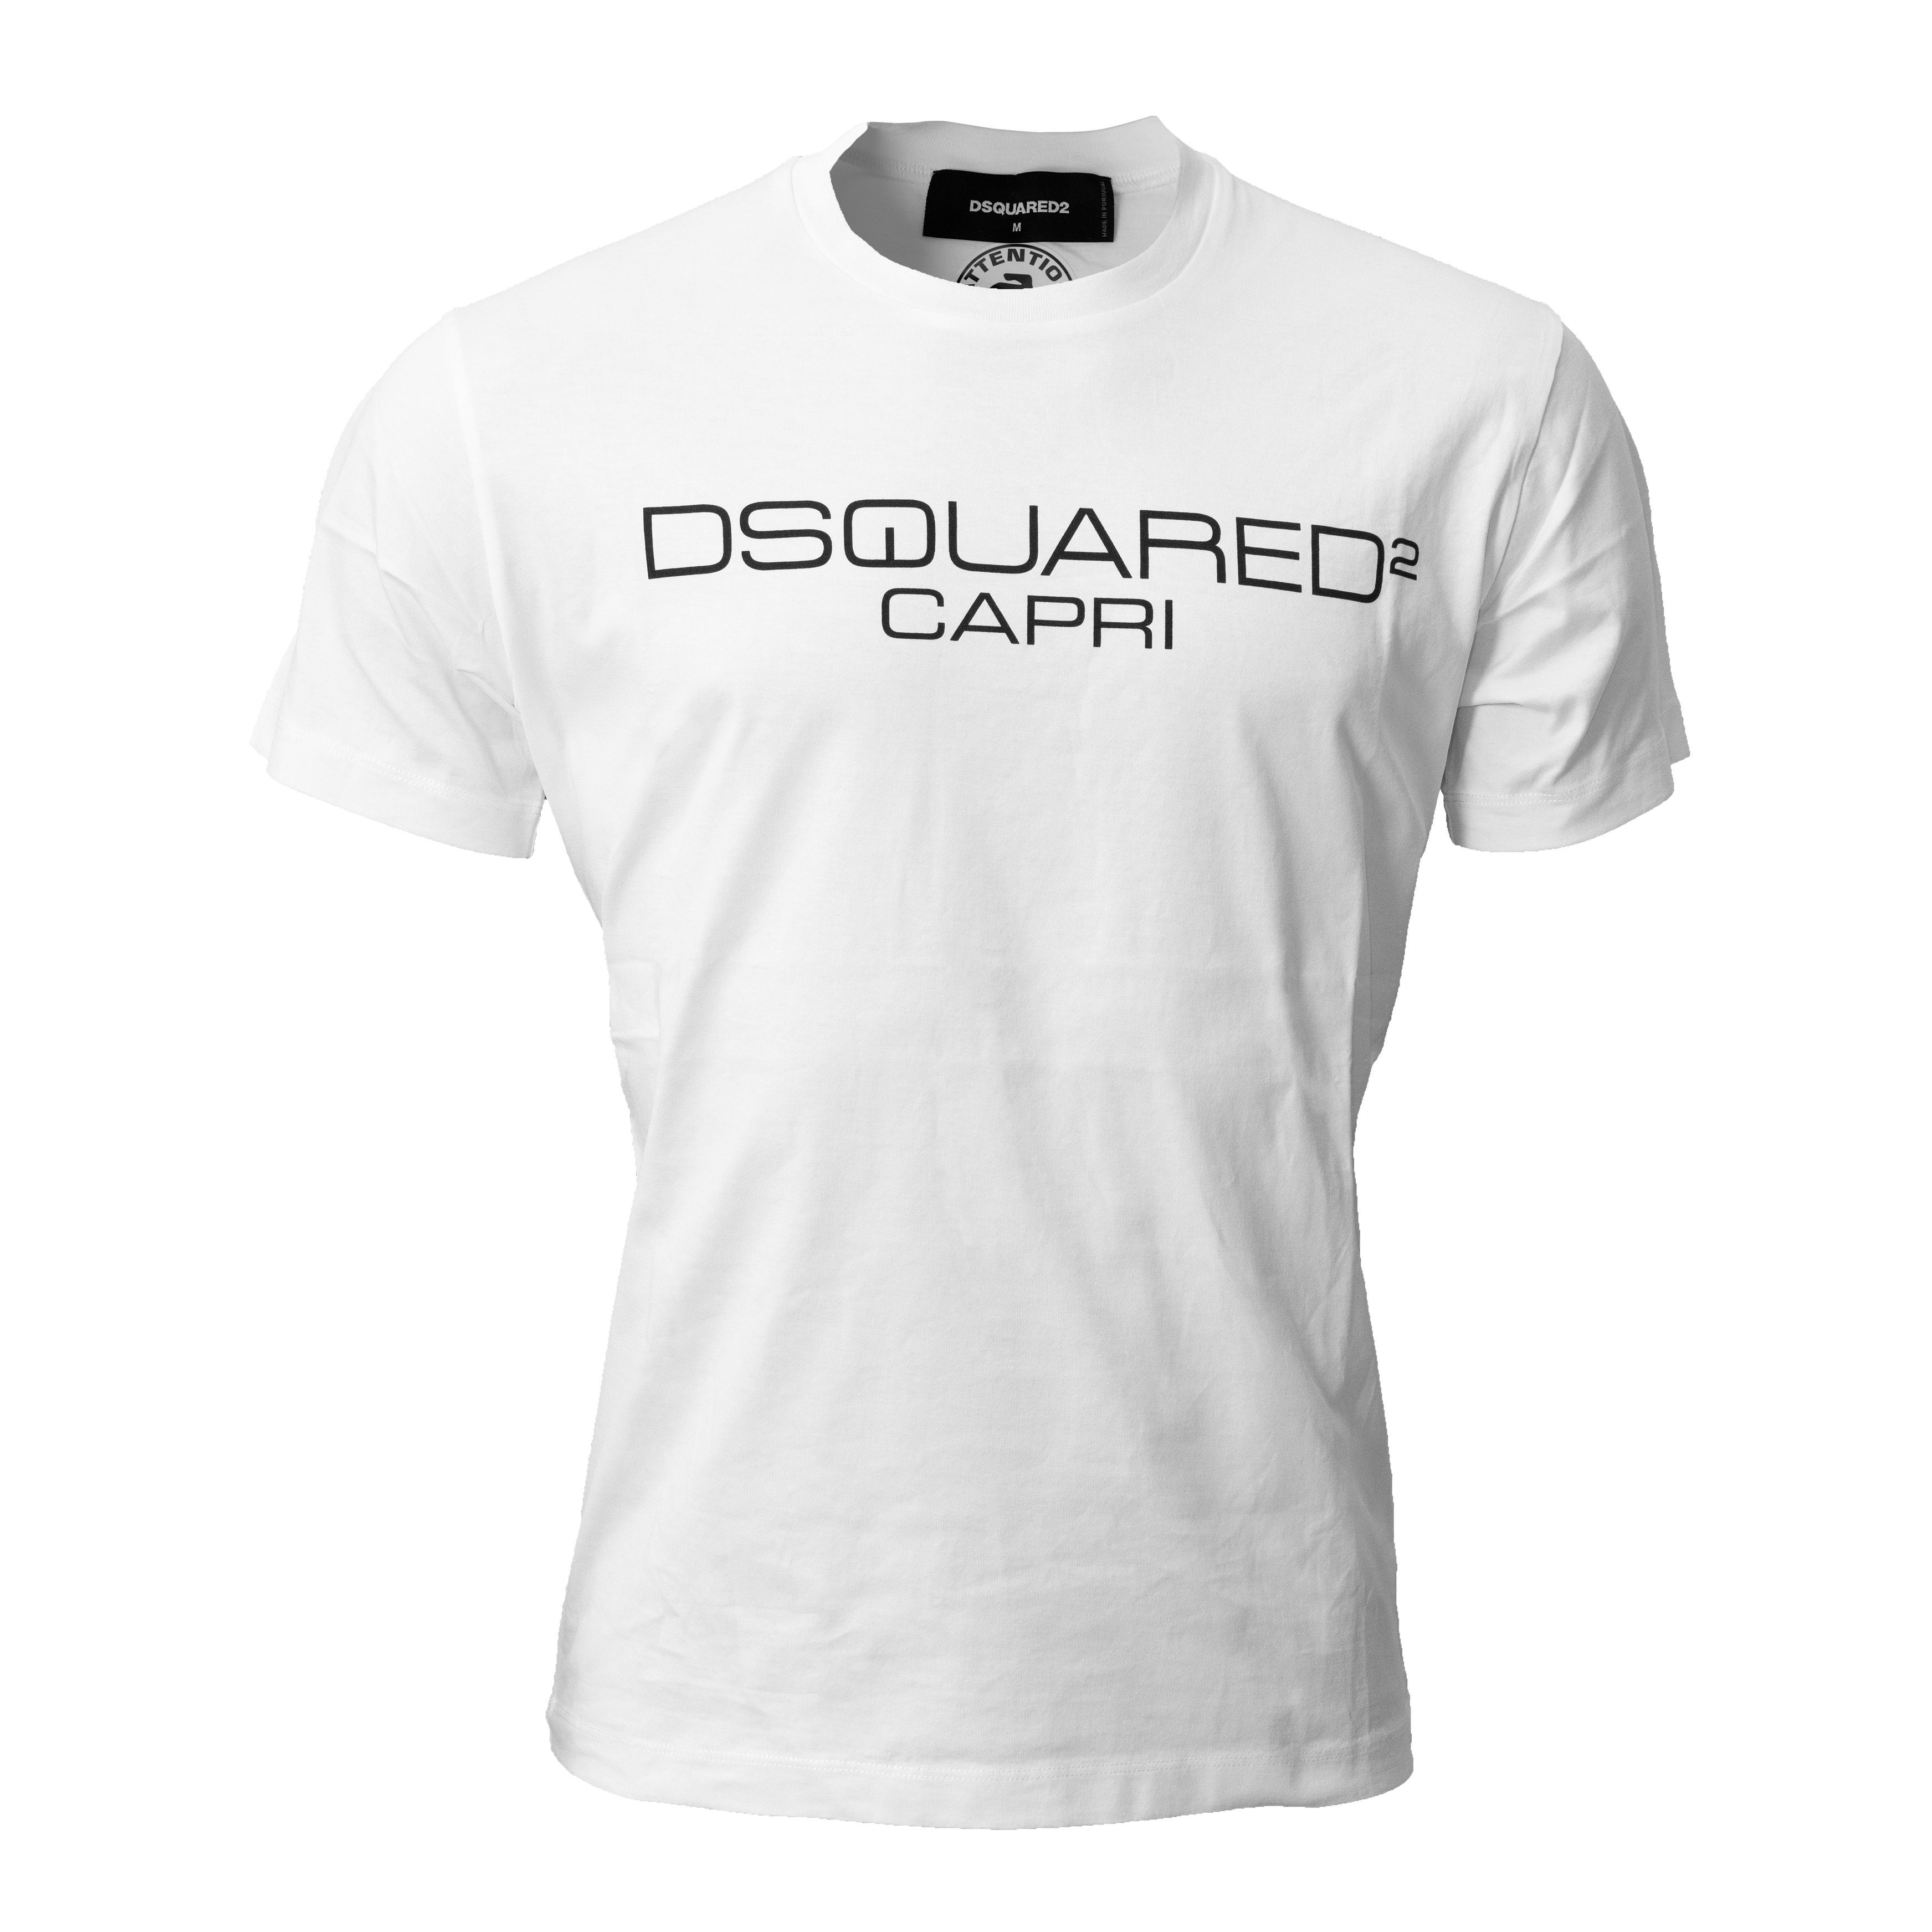 Dsquared2 T-Shirt CAPRI Weiß mit Frontprint